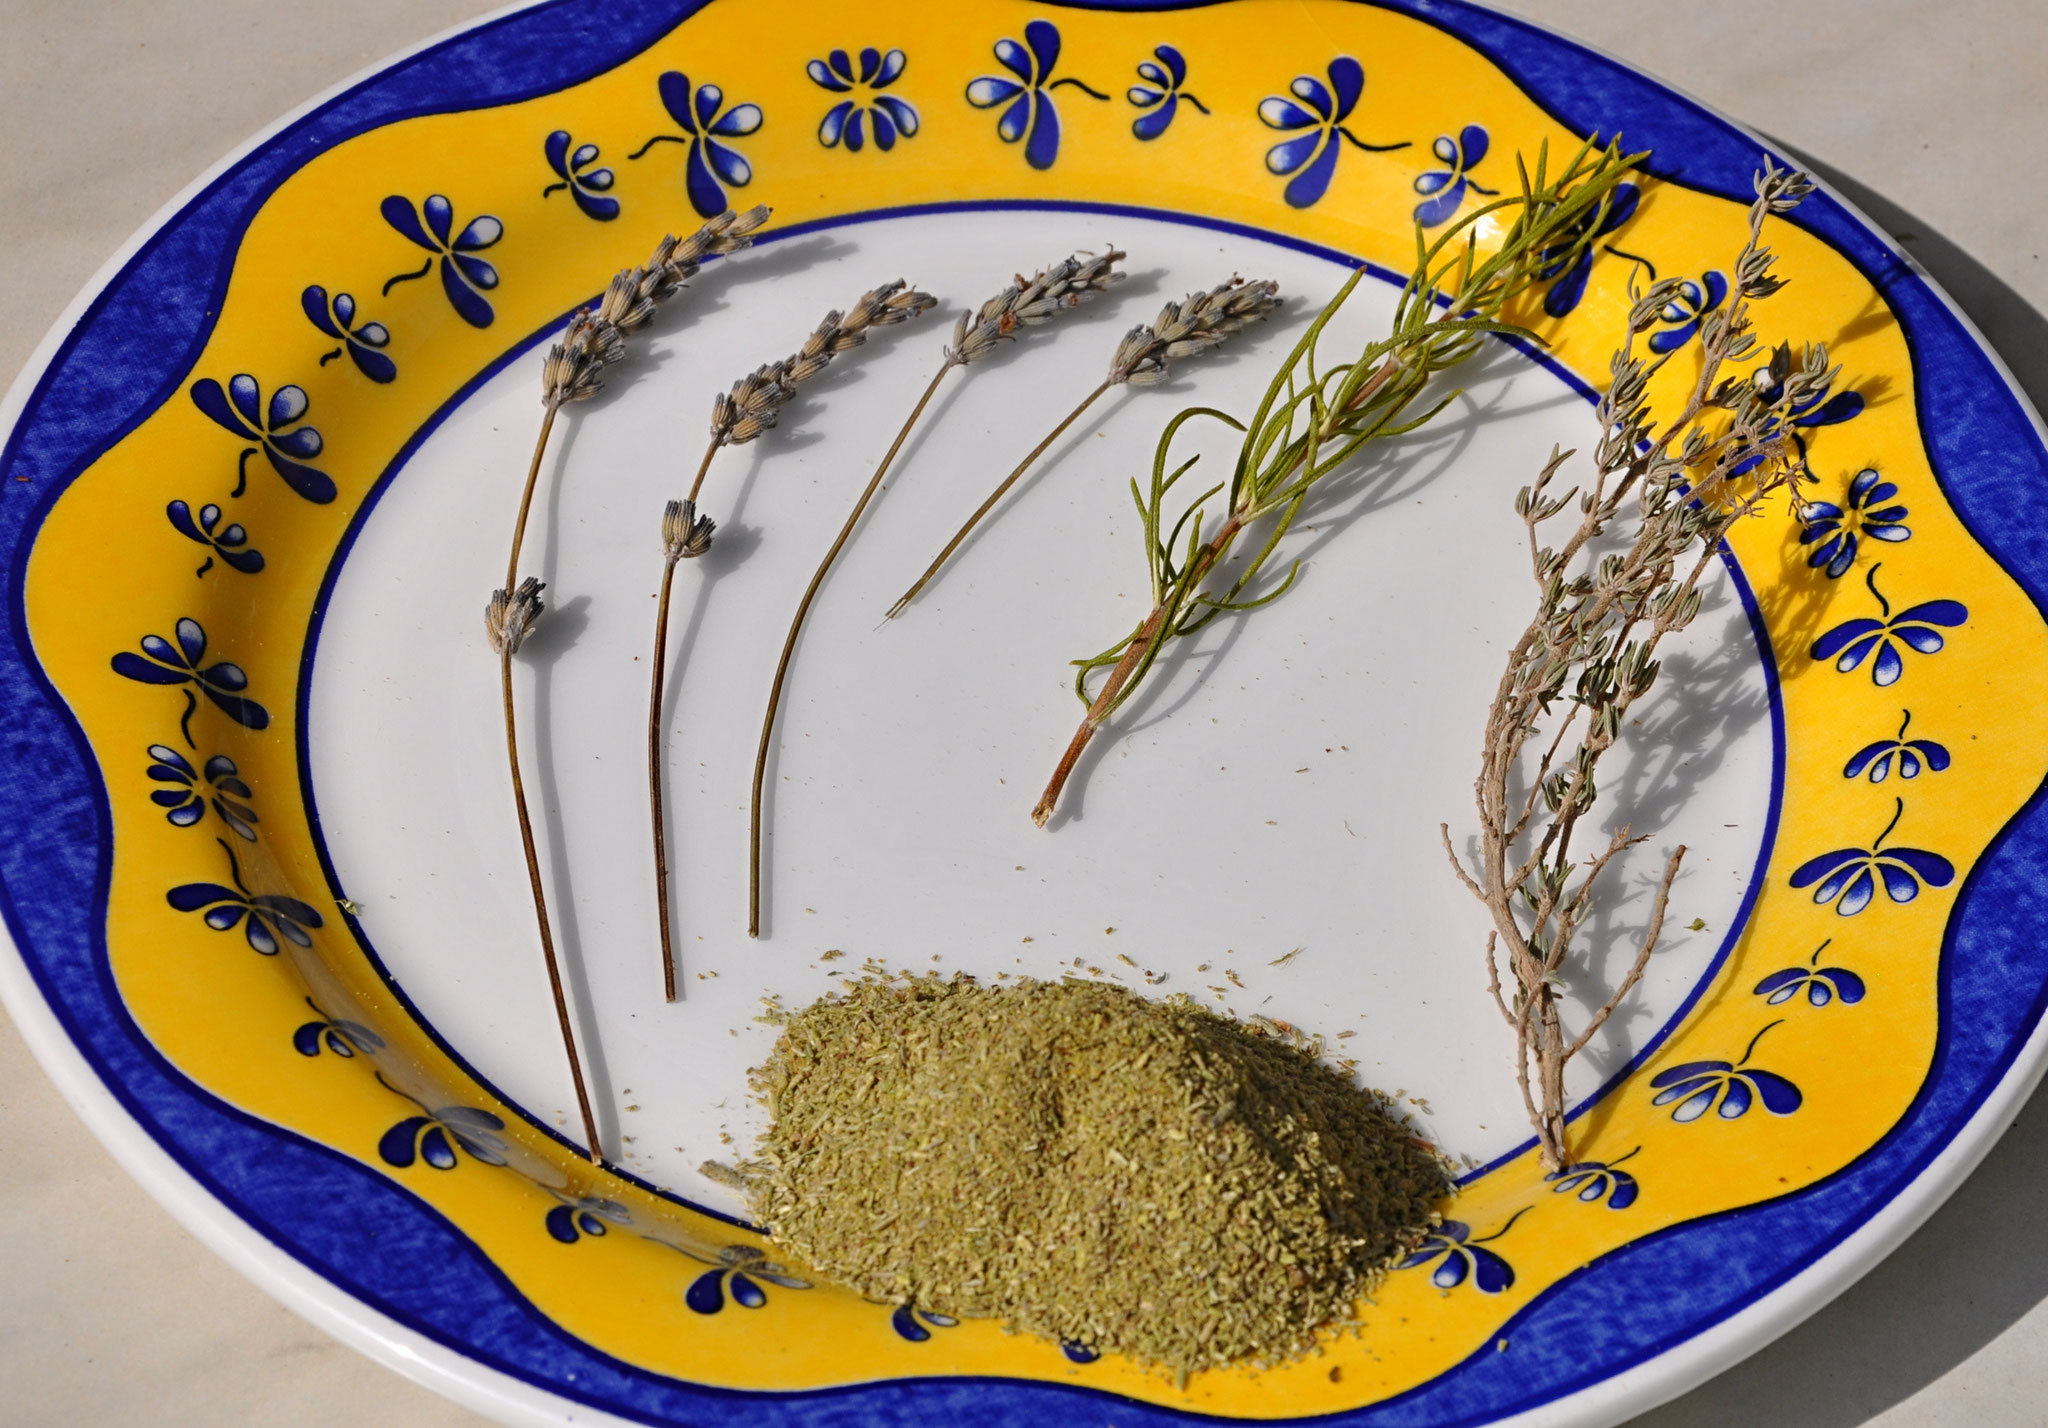 Les trois herbes aromatiques: lavande, romarin et thym.